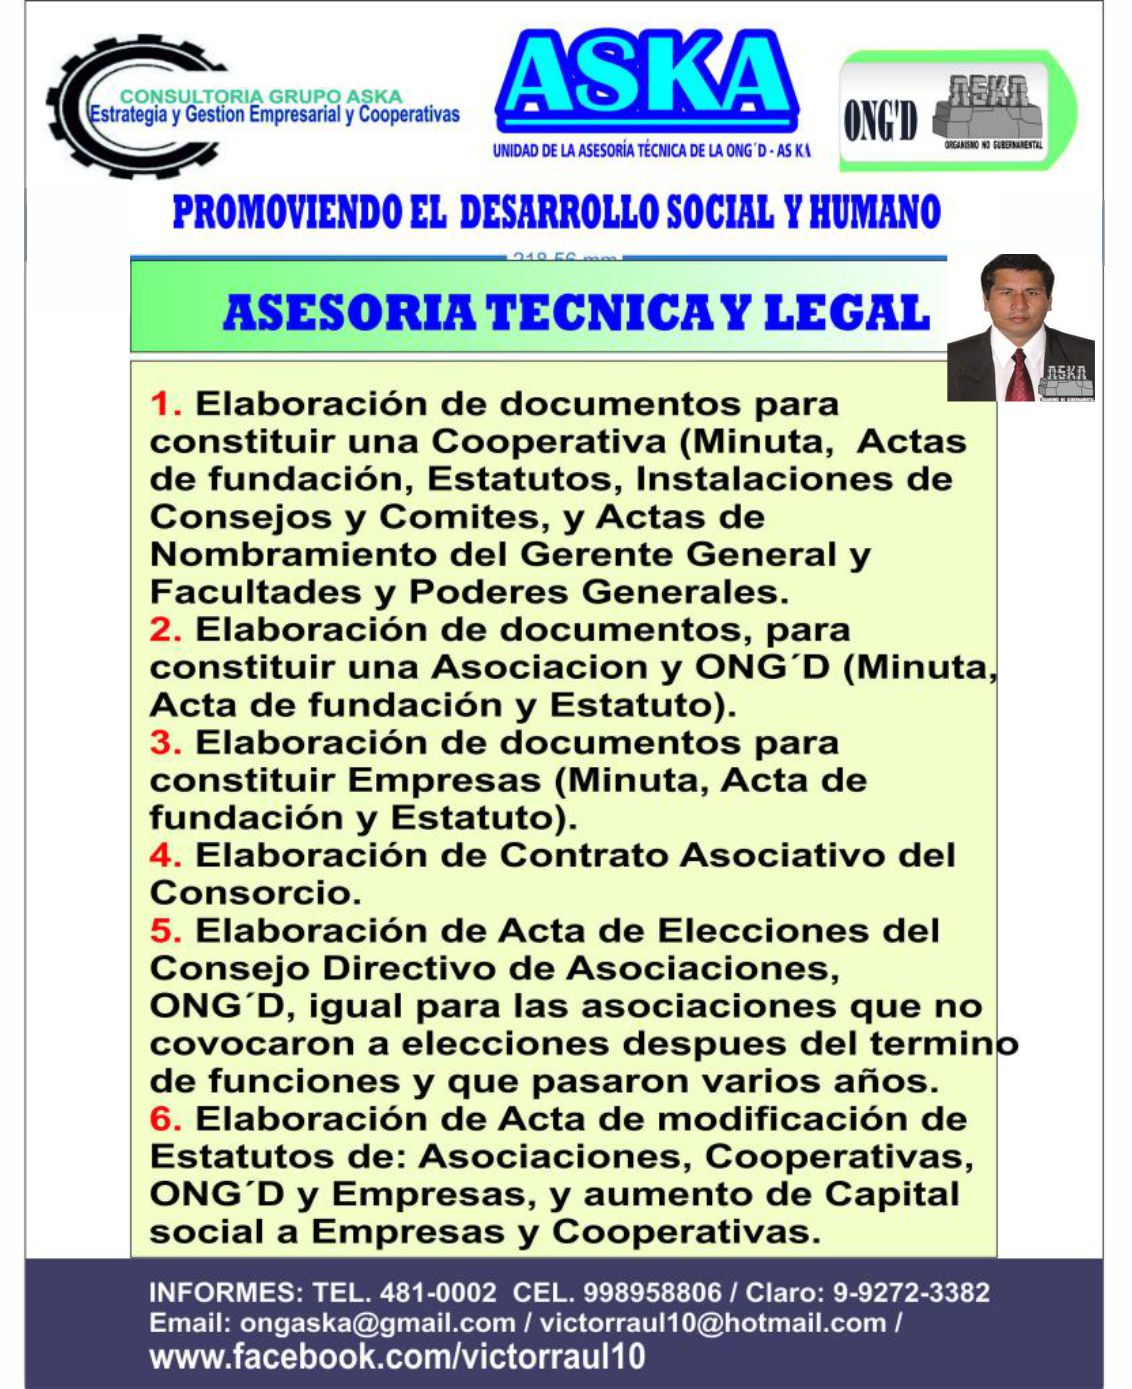 CRONICA DE HONOR  UMEP-PERU  1995-2018